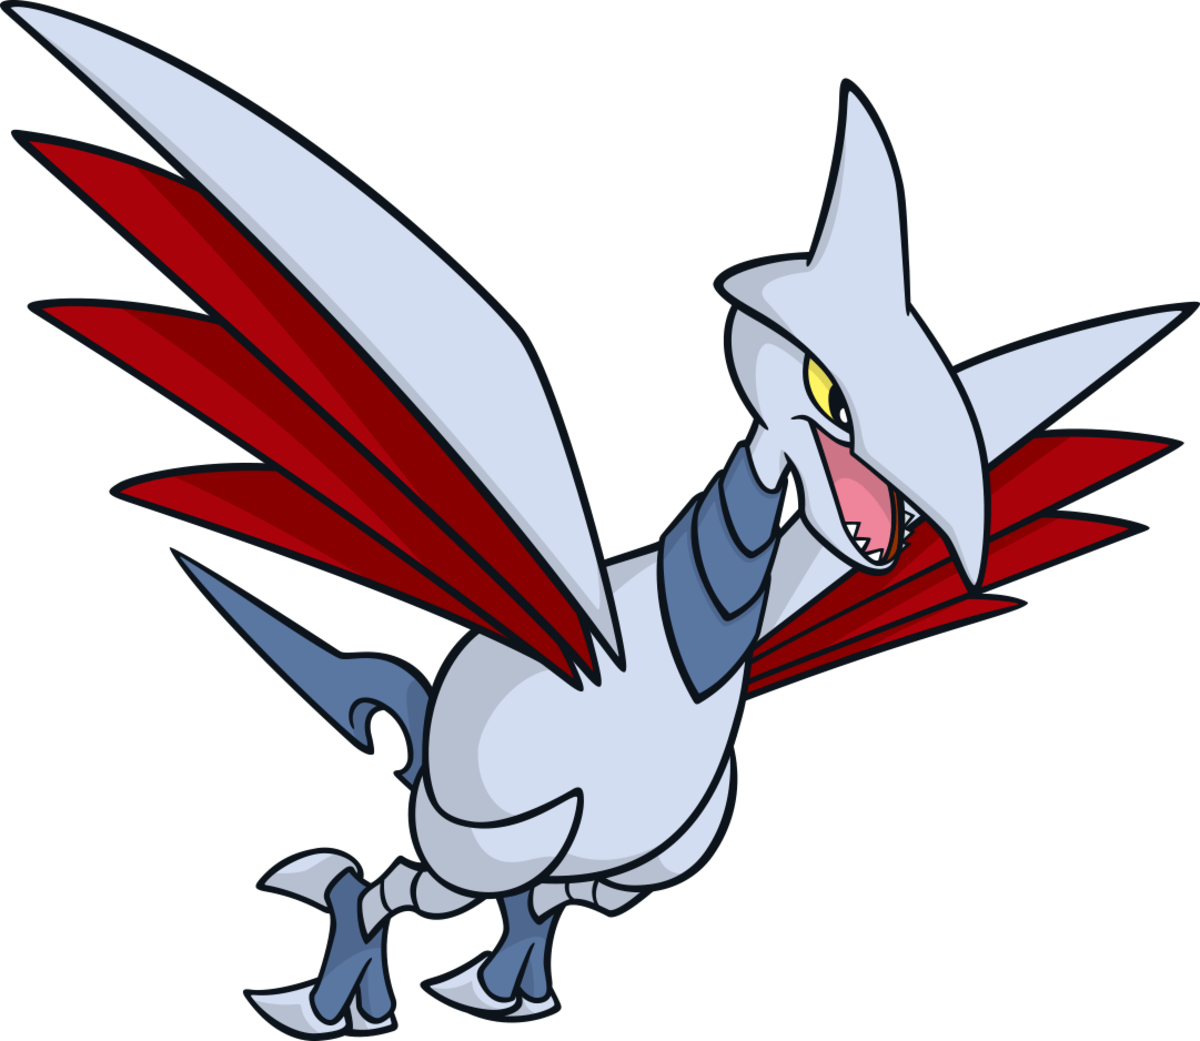 Skarmory, the "Armor Bird" Pokémon